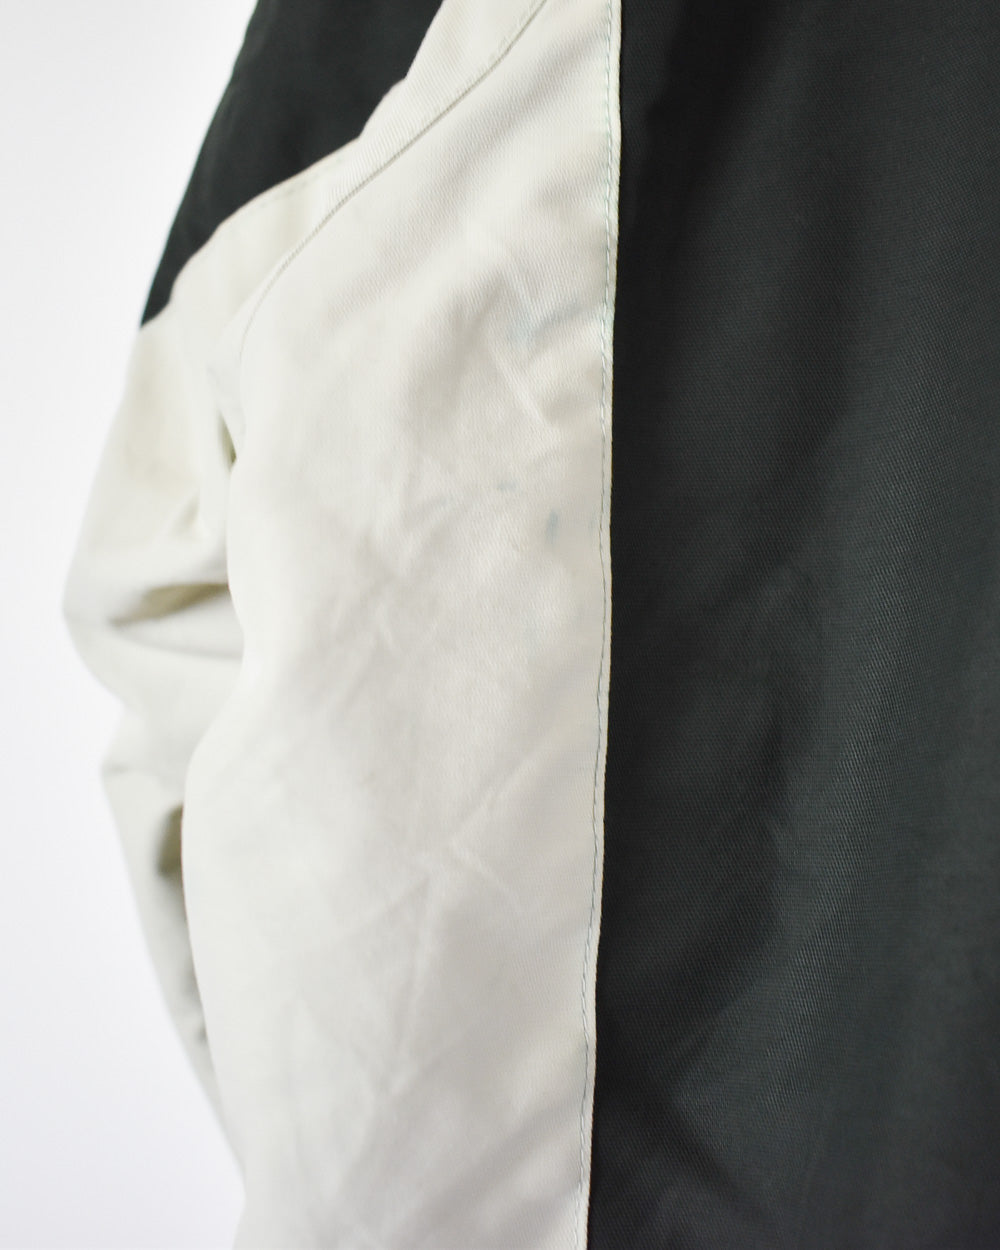 Green Nautica Reversible Fleece Jacket - Medium